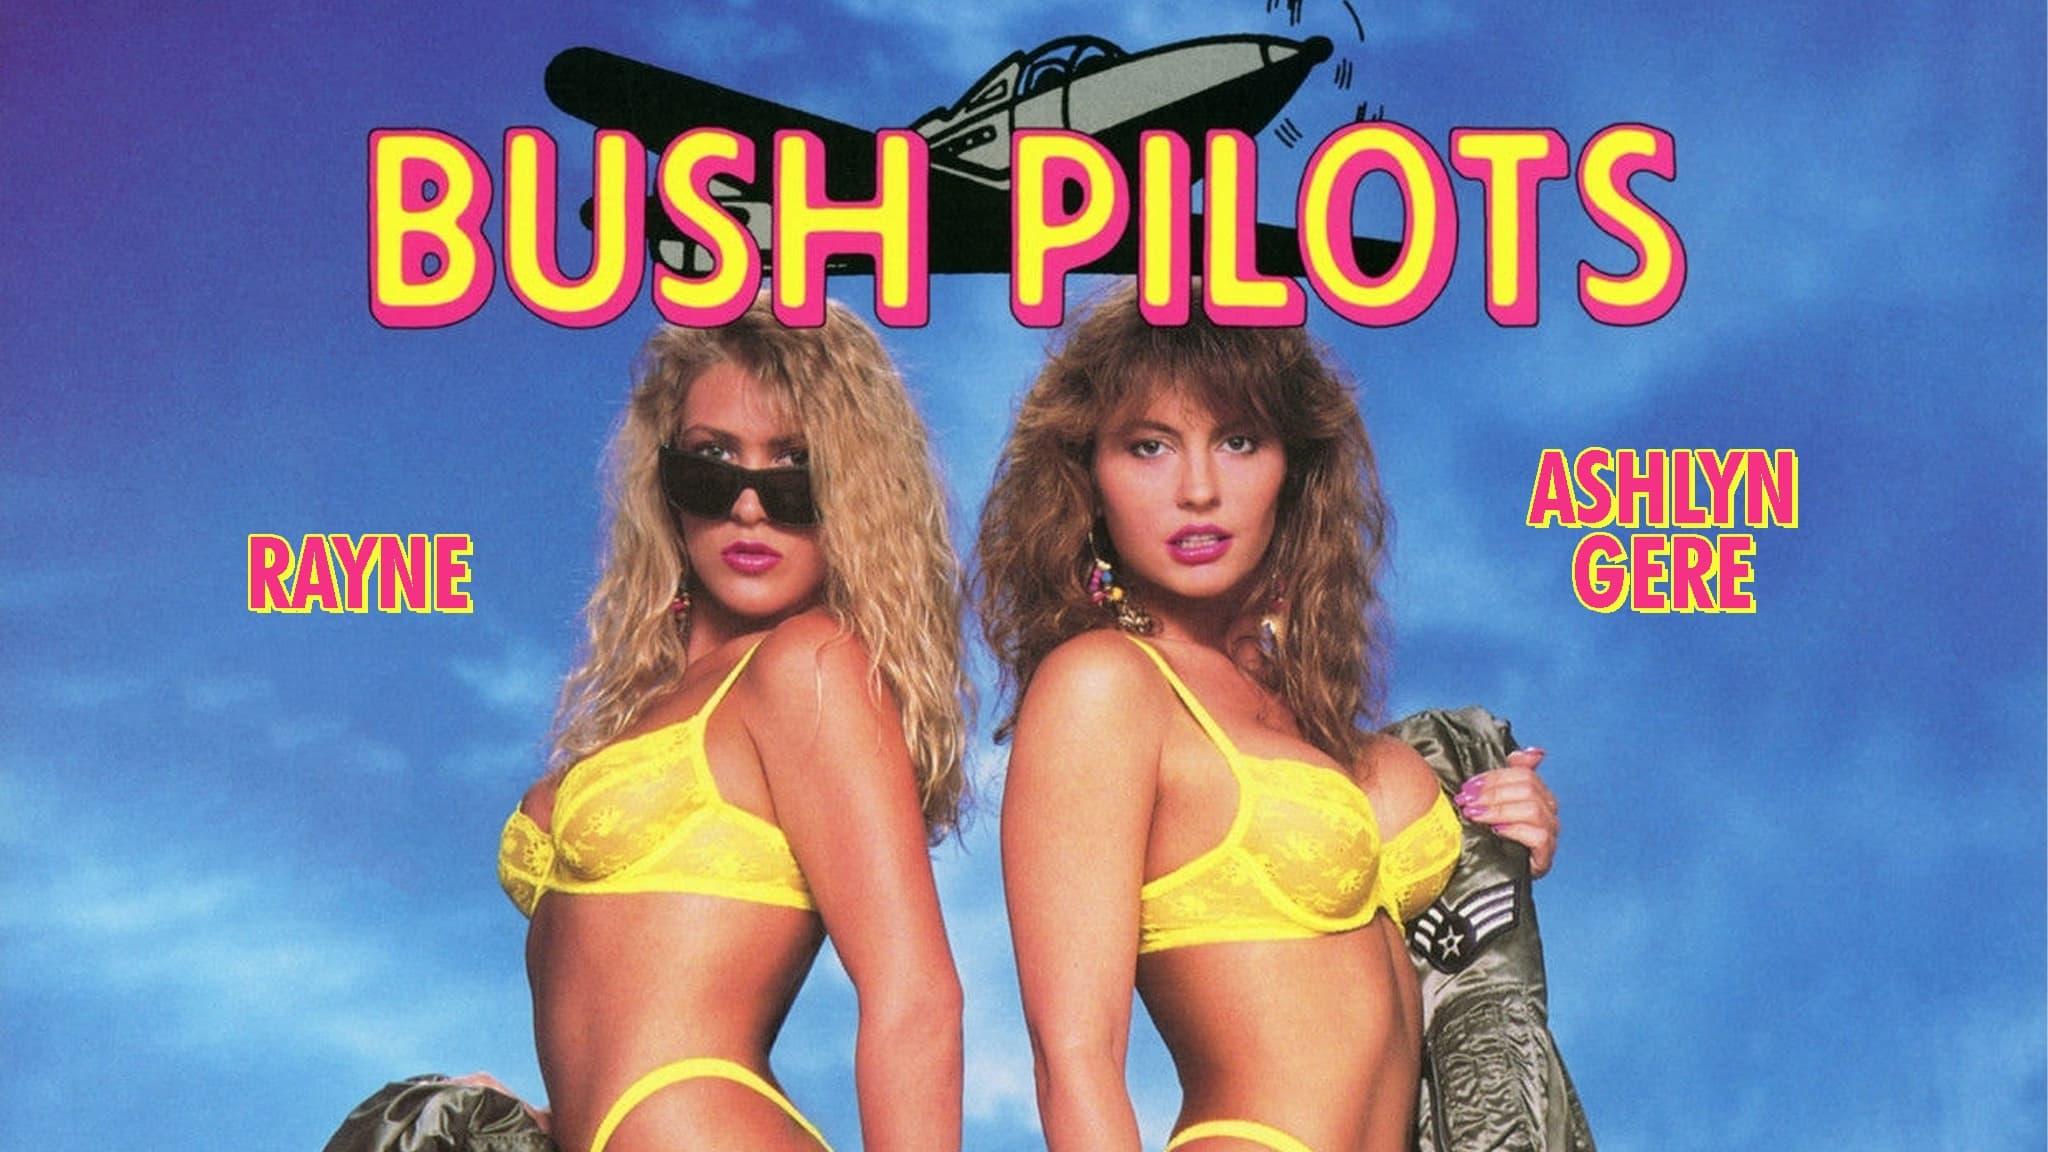 Bush Pilots backdrop